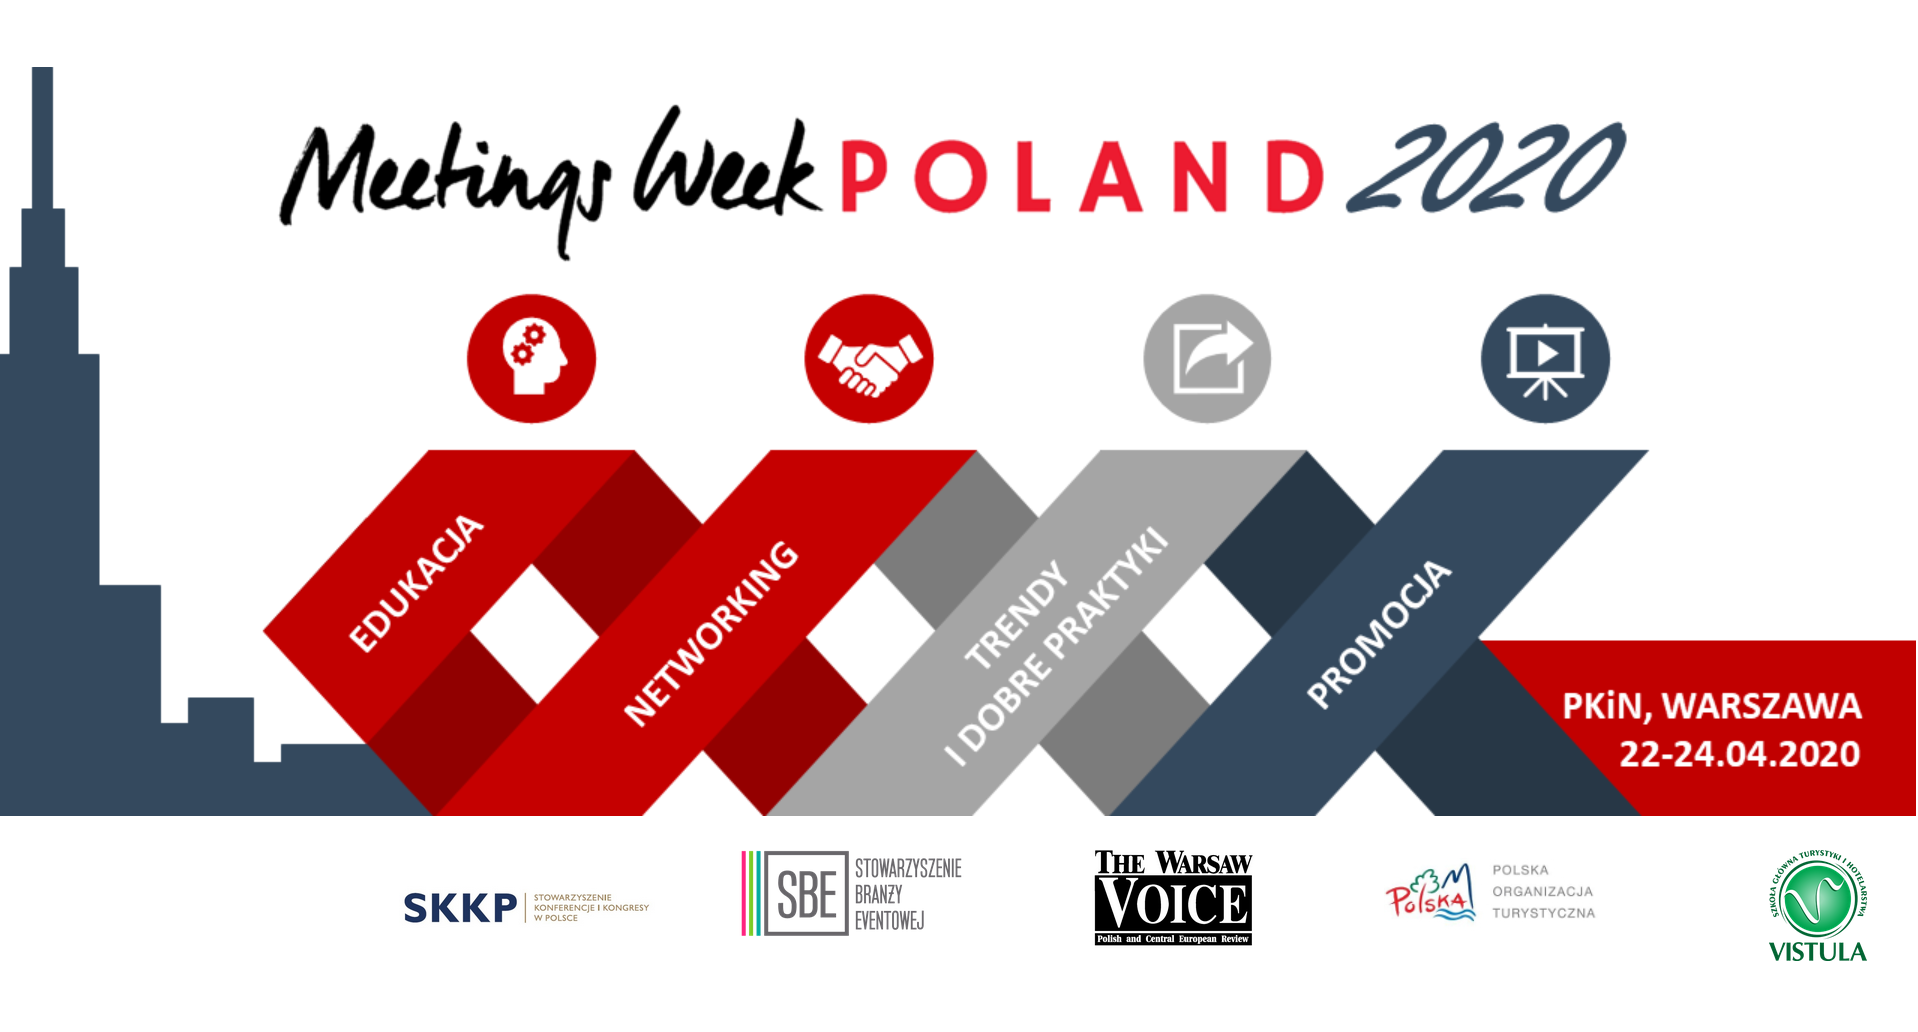 22-24.04.2020 Meetings Week Poland 2020 Warszawa 